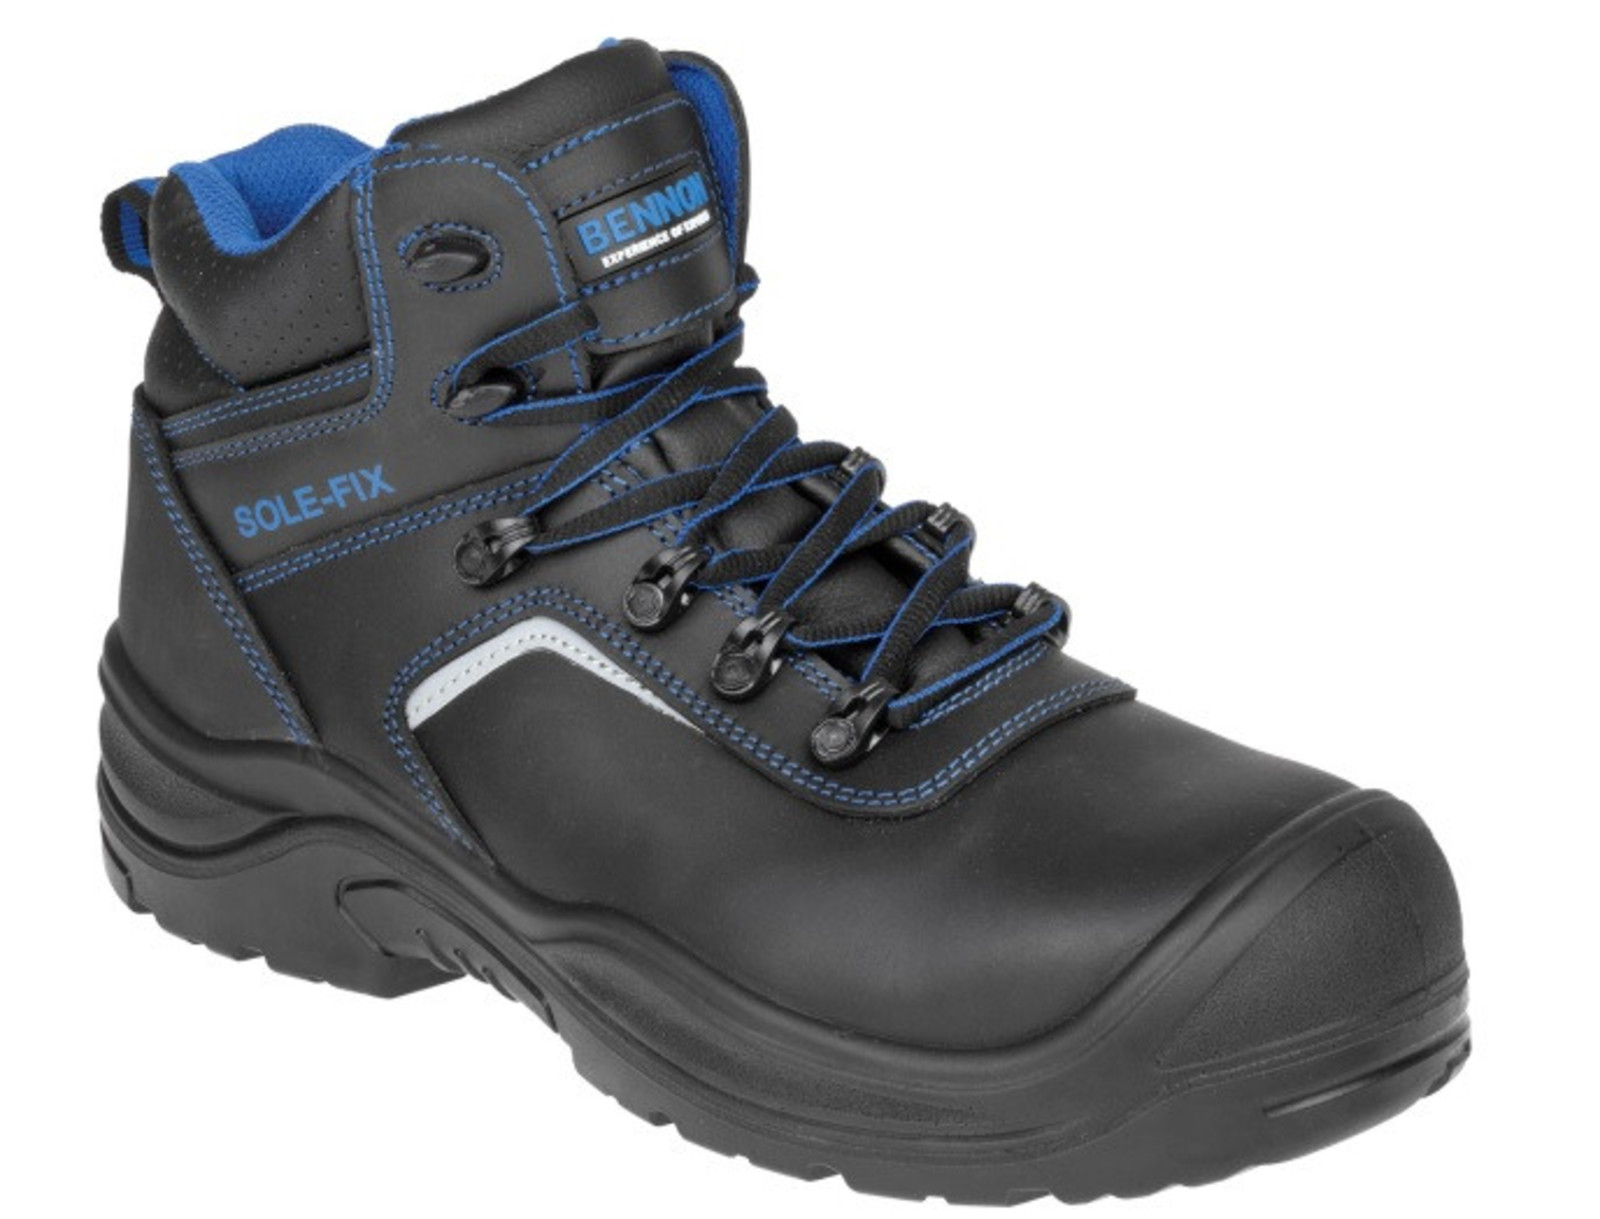 Bezpečnostná obuv Bennon Raptor S3 - veľkosť: 38, farba: čierna/modrá